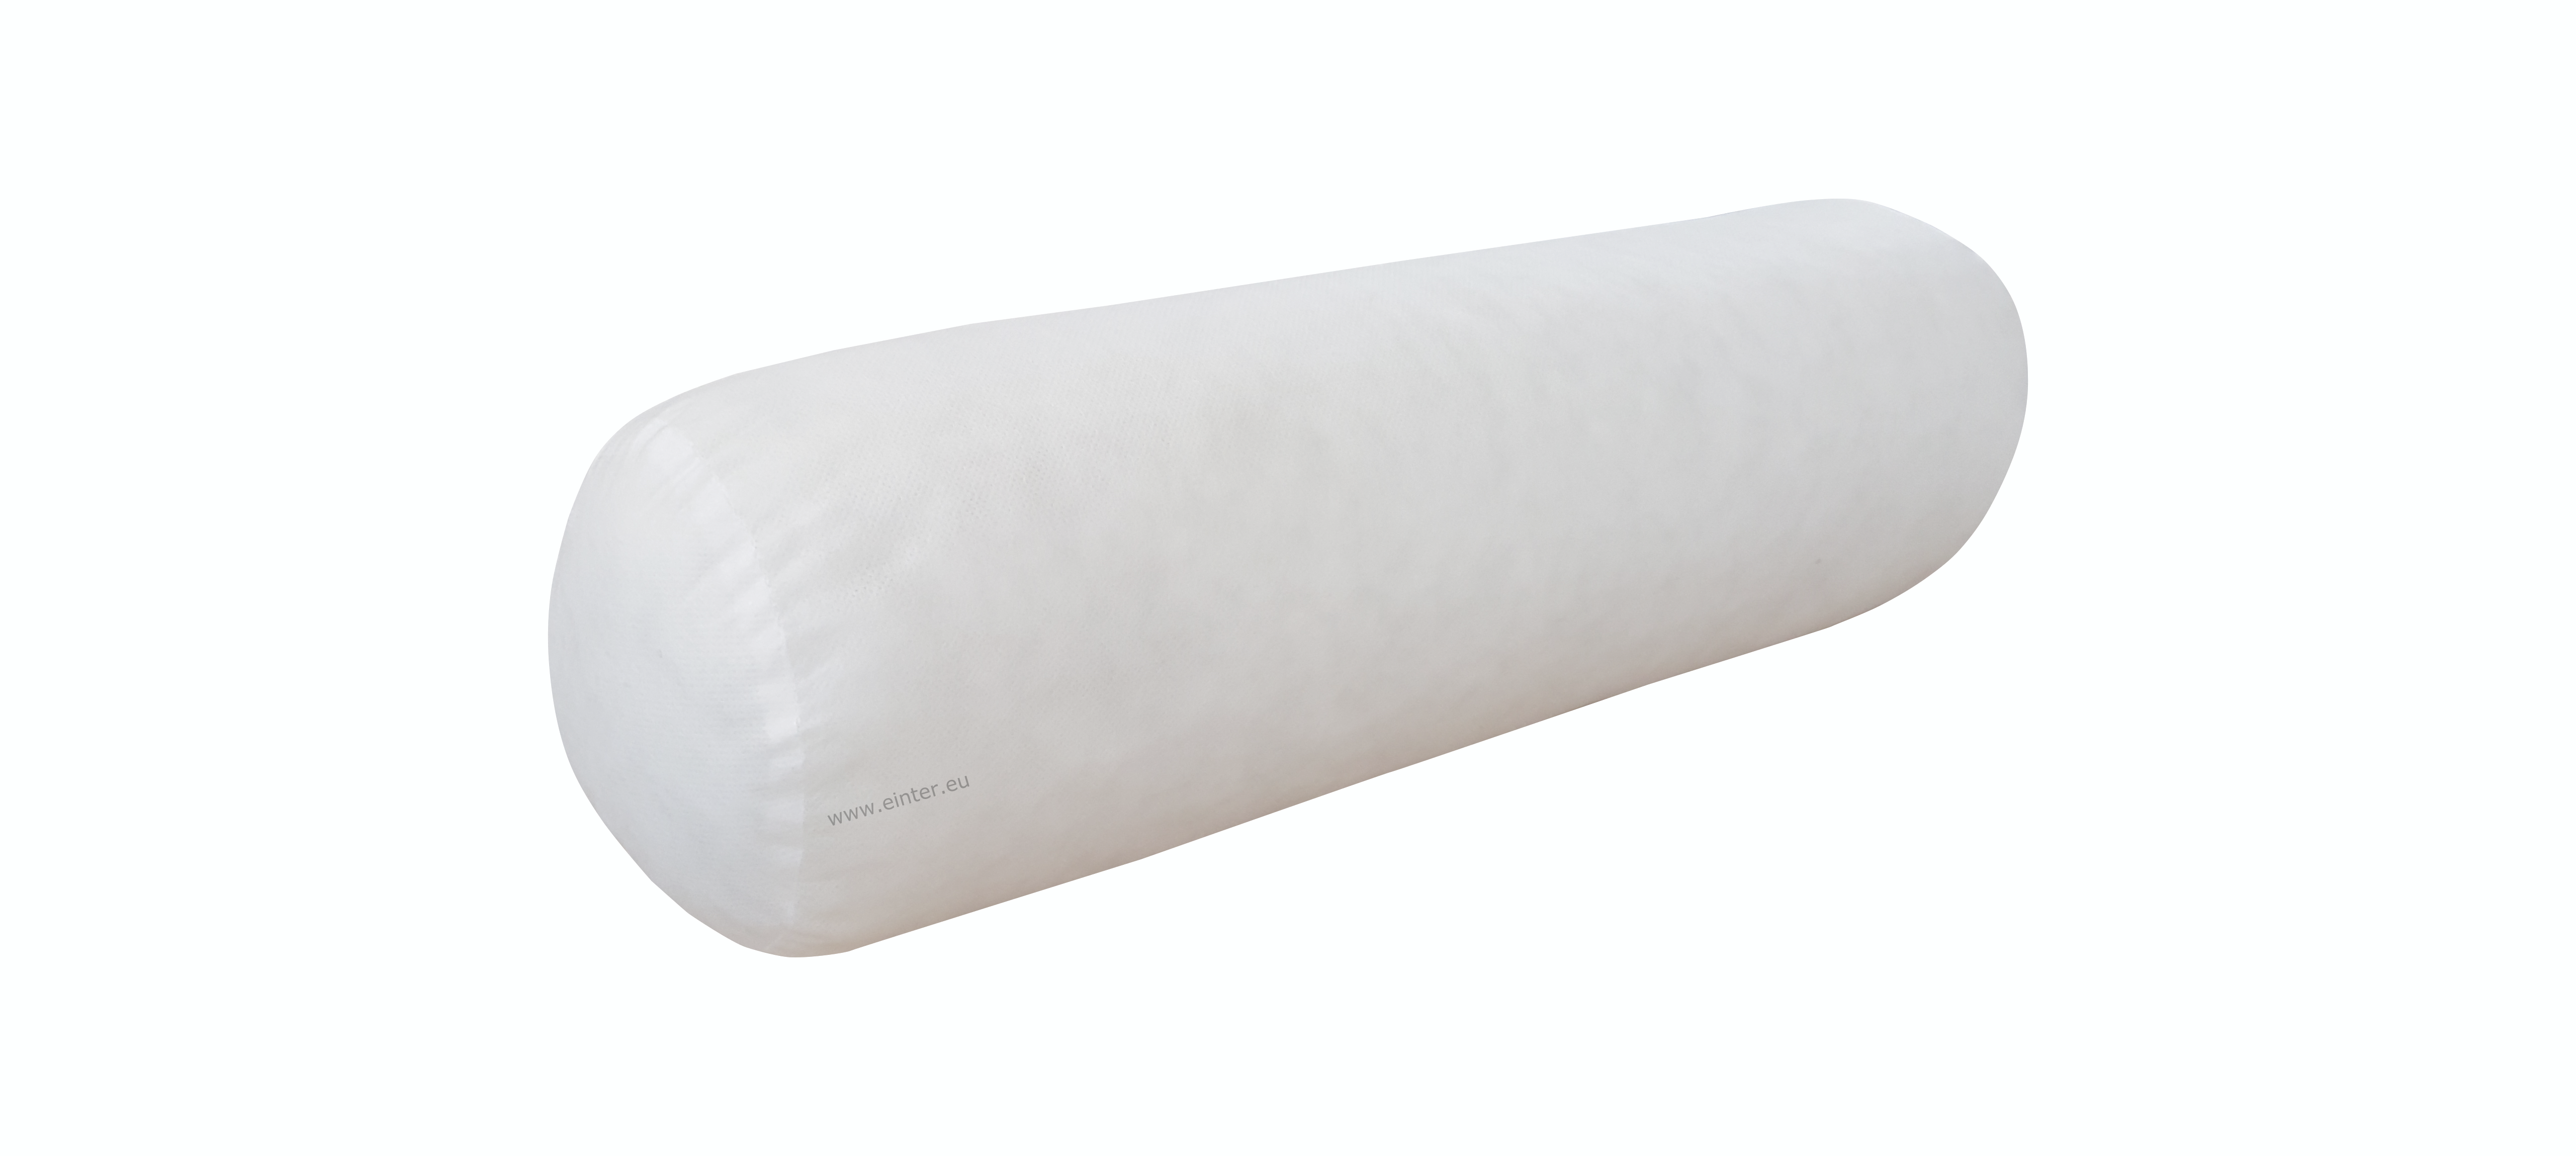 Wkład do poduszki w kształcie wałka 50x15 cm.